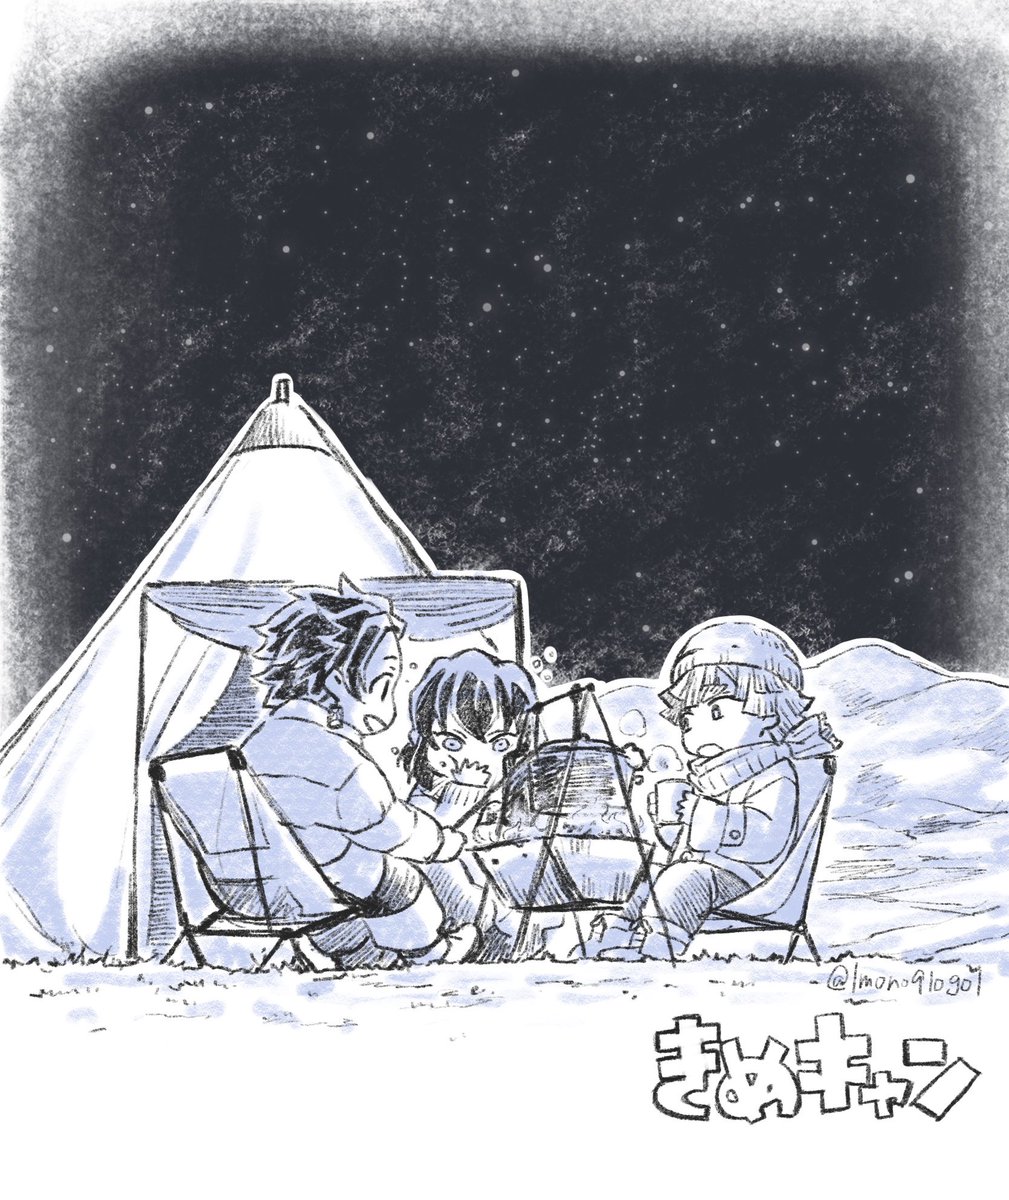 【別垢再掲】ハマった当初描いたキャンプかiまiぼiこ(たぶん2019年のやつ) 